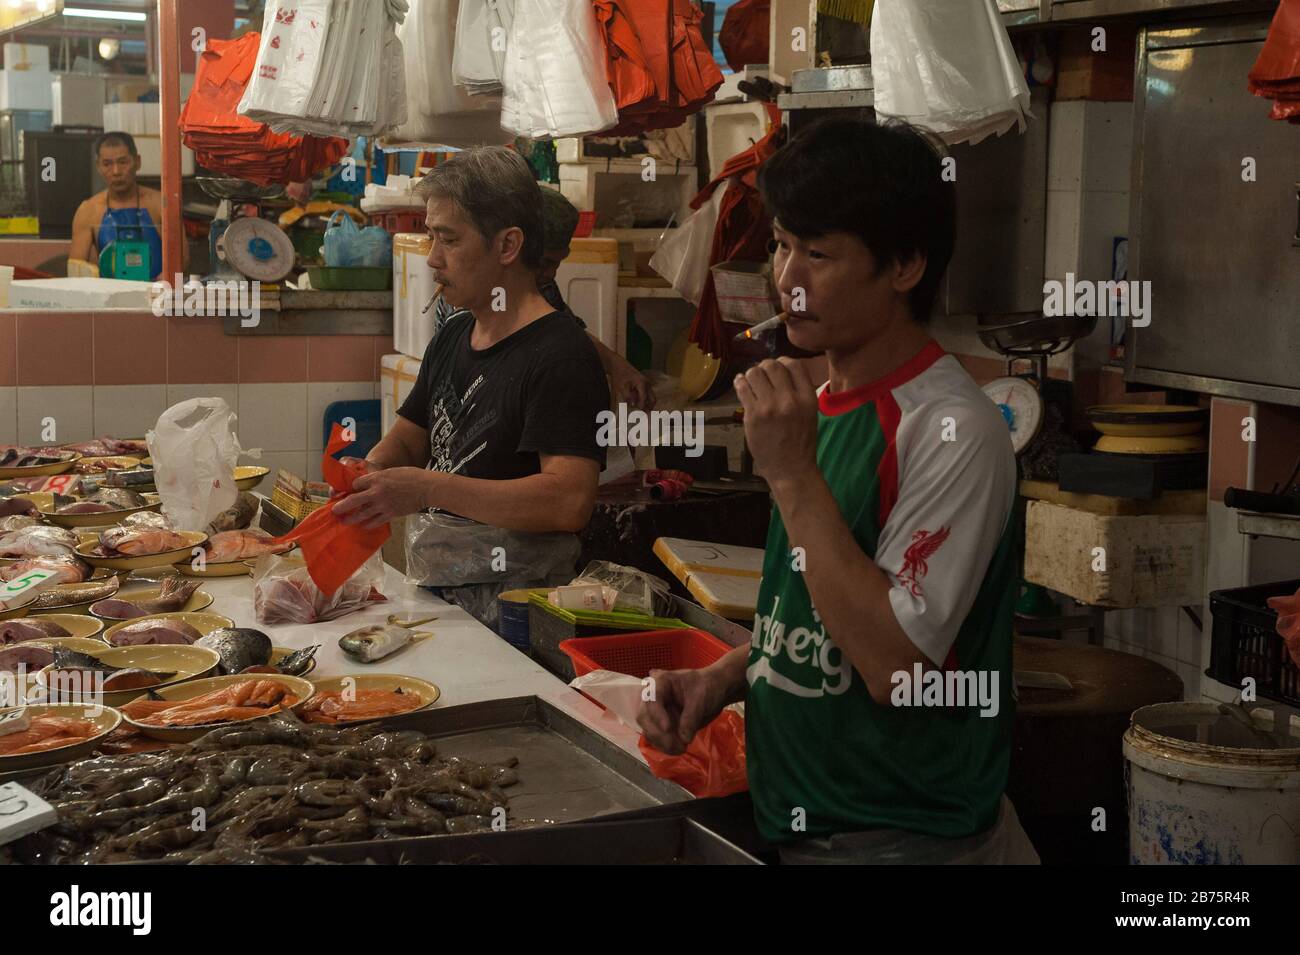 27.07.2017, Singapour, République de Singapour, Asie - vendeurs de poissons sur le marché de Chinatown. [traduction automatique] Banque D'Images